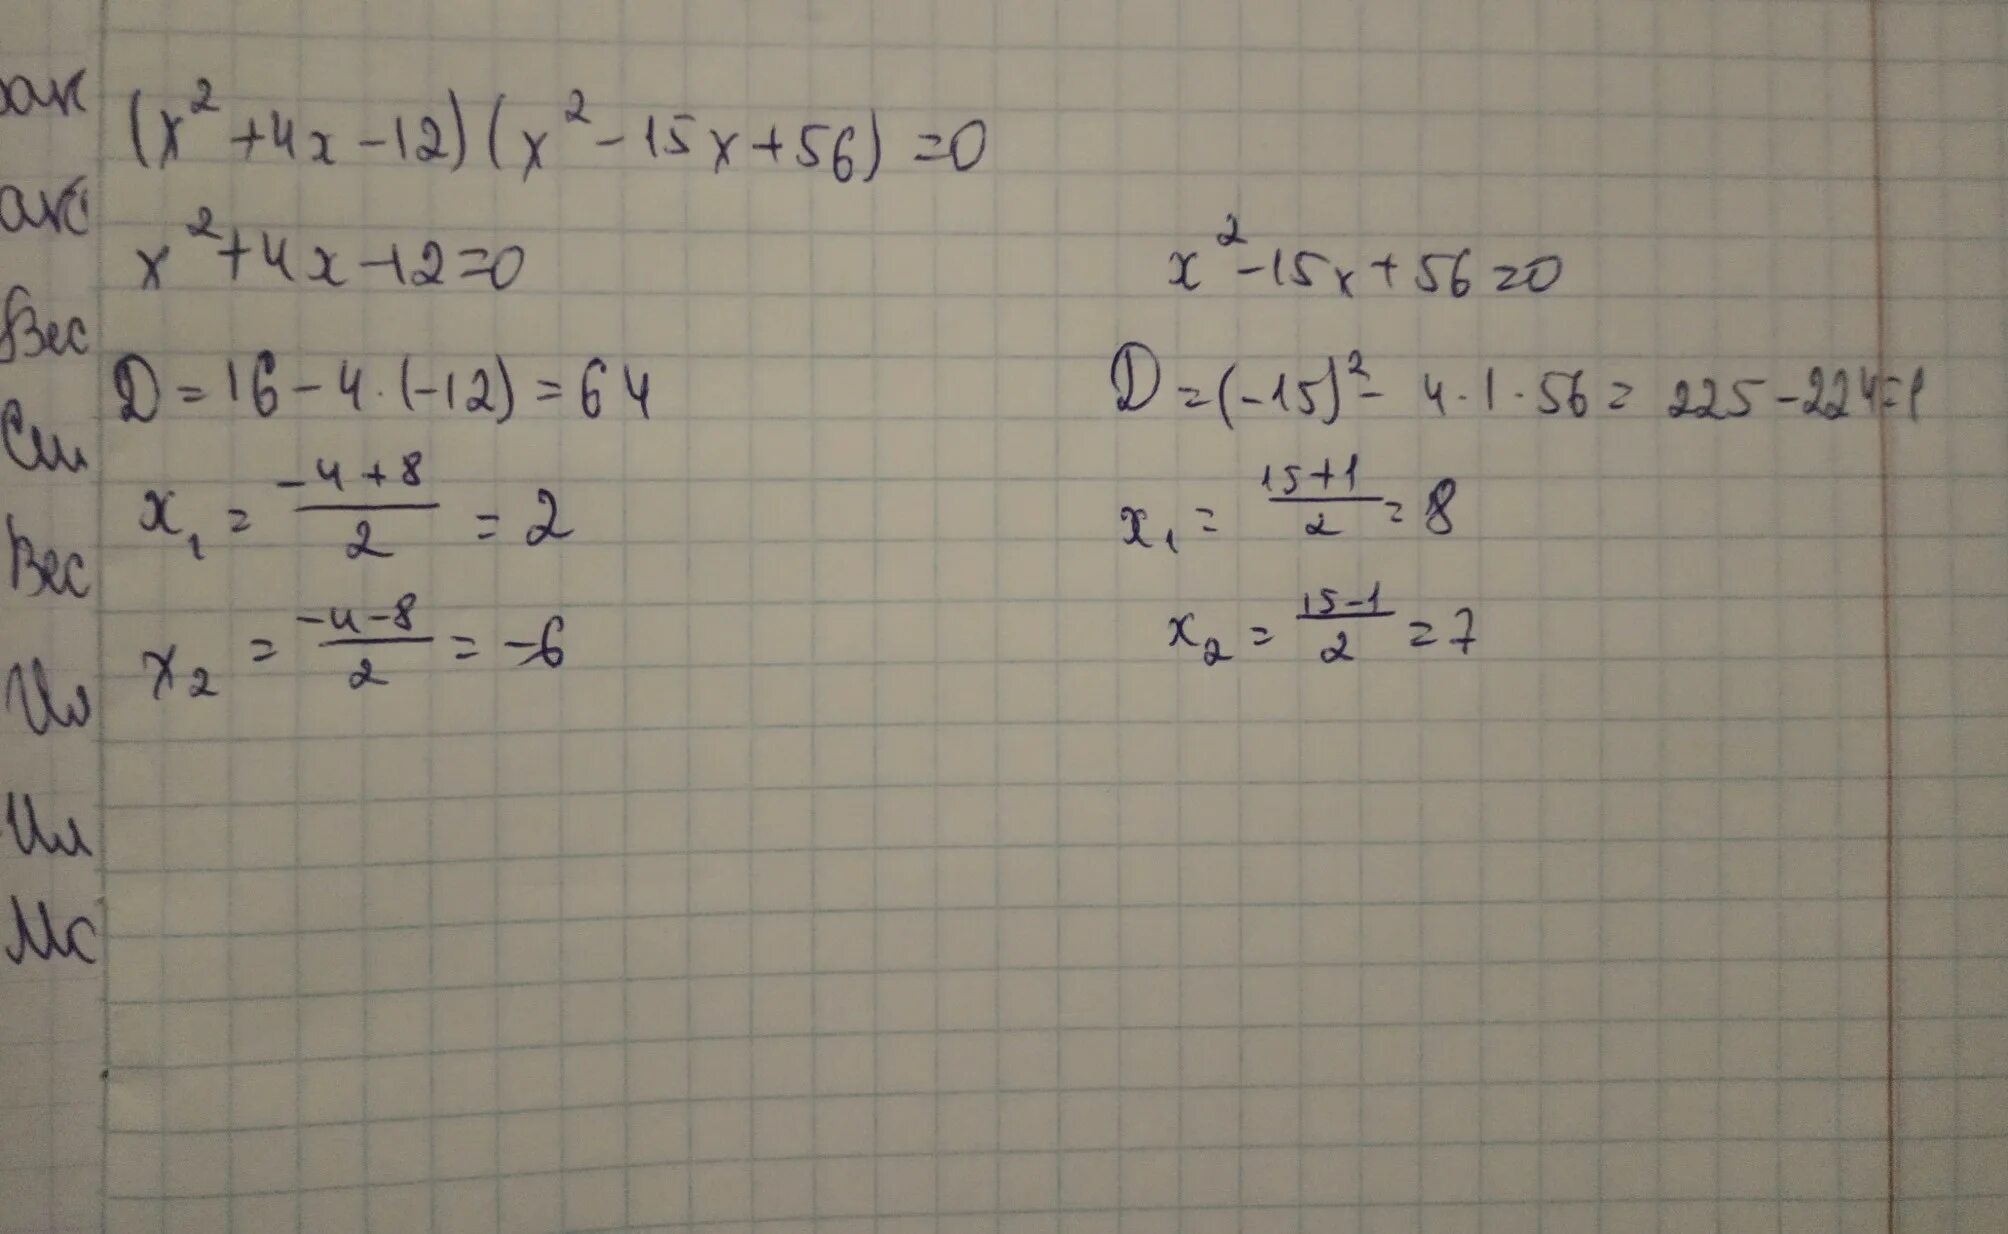 5х 2 х 3 0 впр. X2-15x+56 0. X2-2x-15=0. Х2-15х+56 0. X2 2x 15 0 решение.